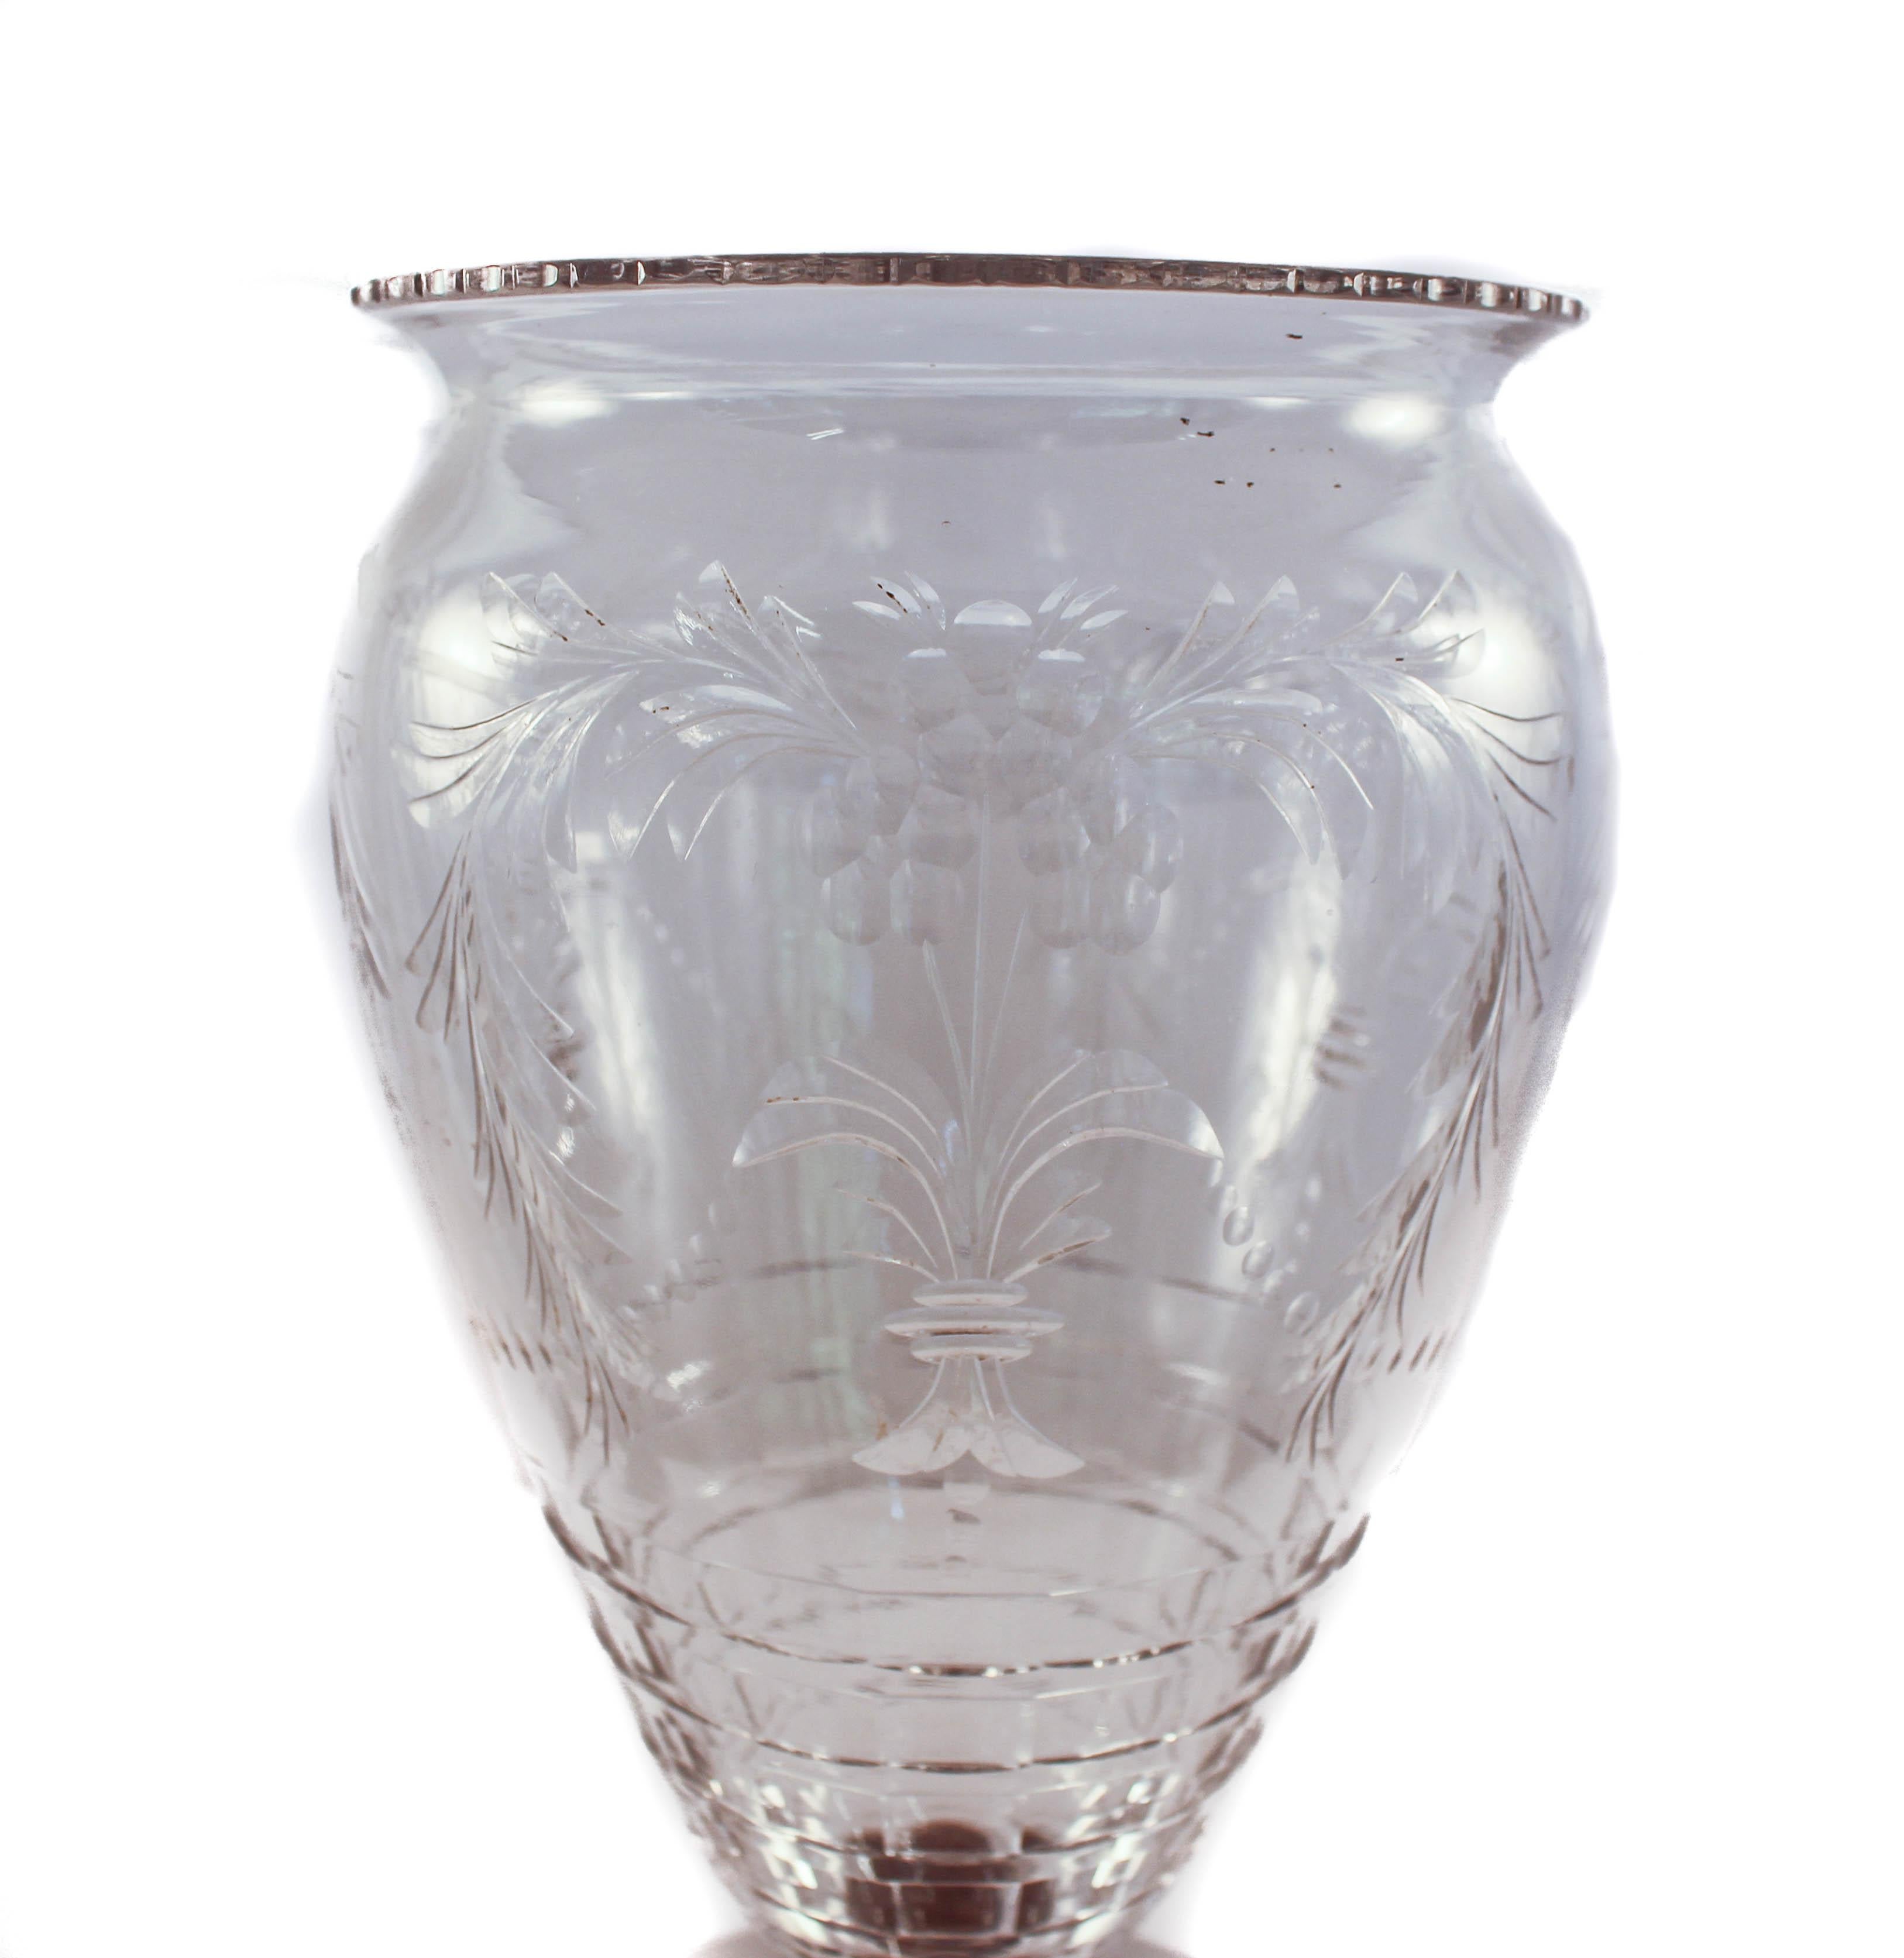 Wir sind stolz darauf, diese Vase aus Sterling und Kristall von der Hawkes Glass Company aus Corning, NY, anbieten zu können.
Das in Corning, NY, ansässige Unternehmen T.G. Hawkes & Co. (ca. 1880-1959) wurde von Thomas Gibbons Hawkes (1846-1913)